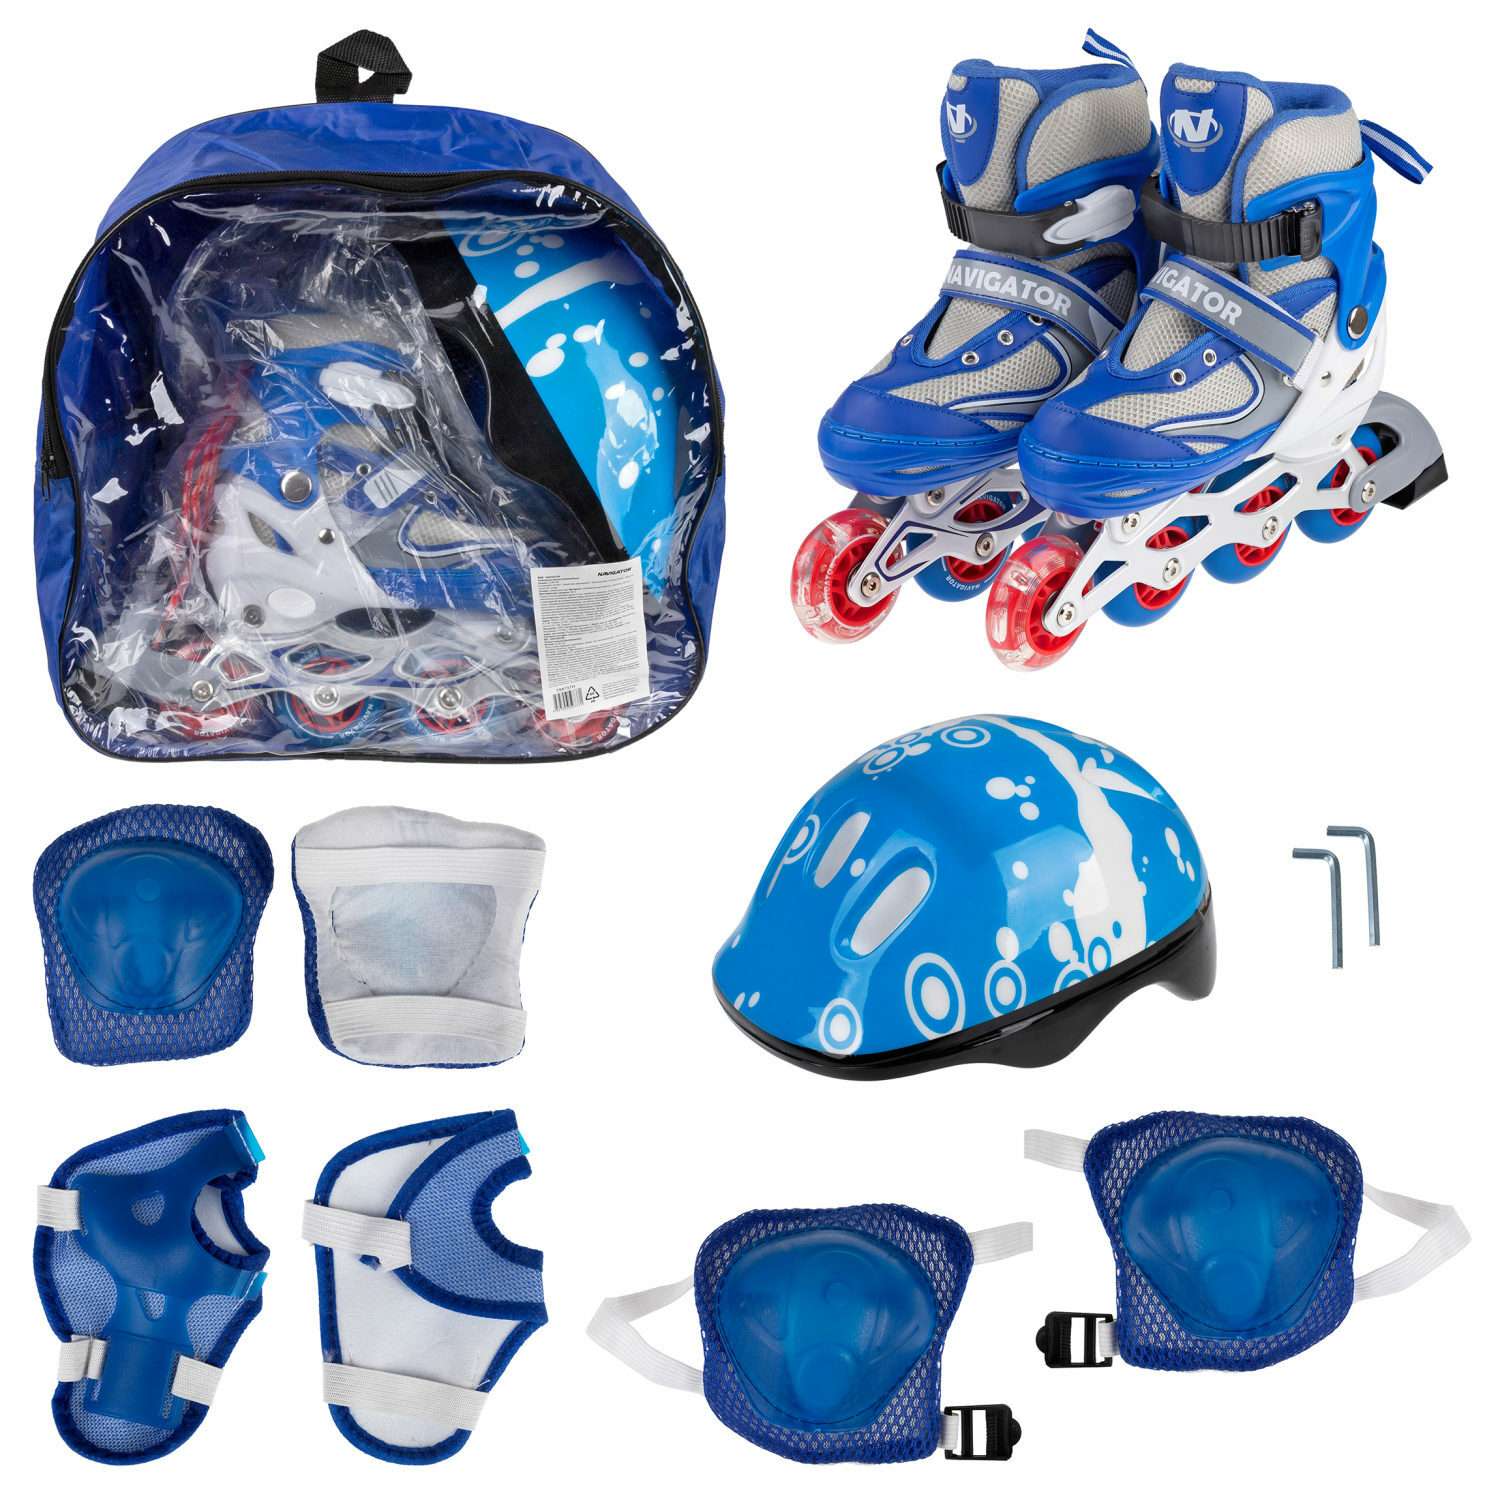 Ролики Navigator детские раздвижные 34 - 37 размер с защитой и шлемом синий - фото 2